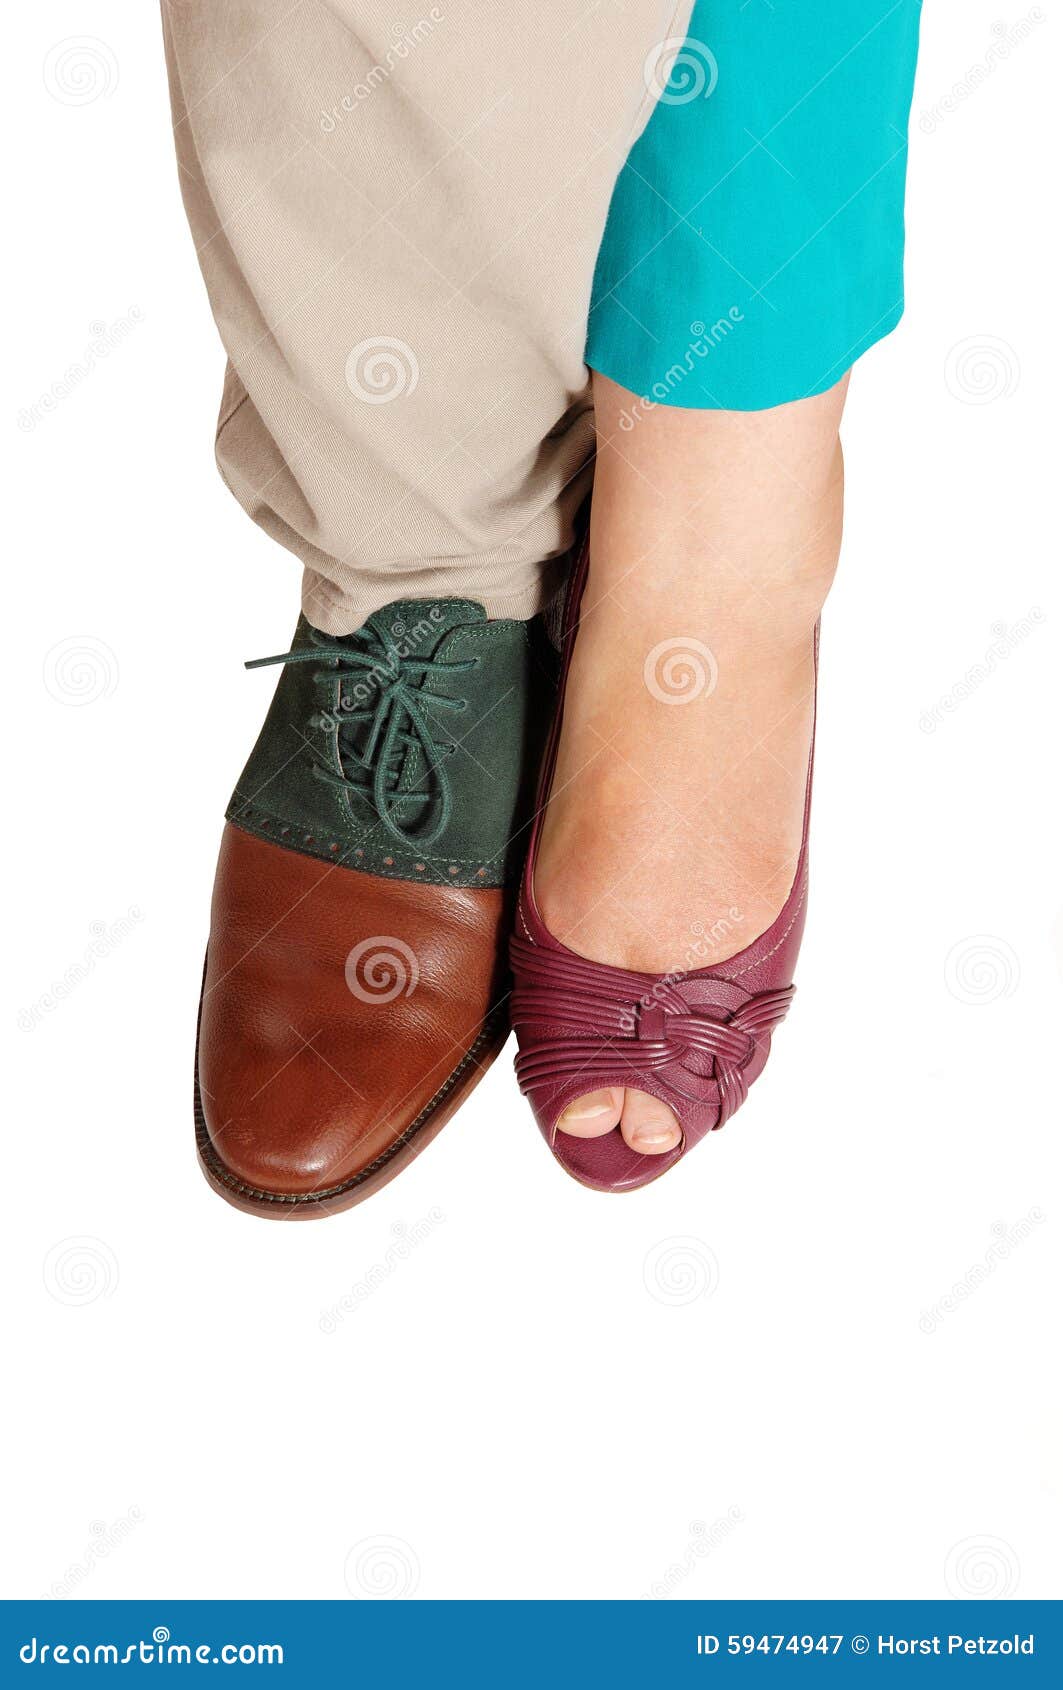 Los Pies Y Los Zapatos De Hombre Y De Una Mujer Imagen de archivo - Imagen de gente, zapato: 59474947